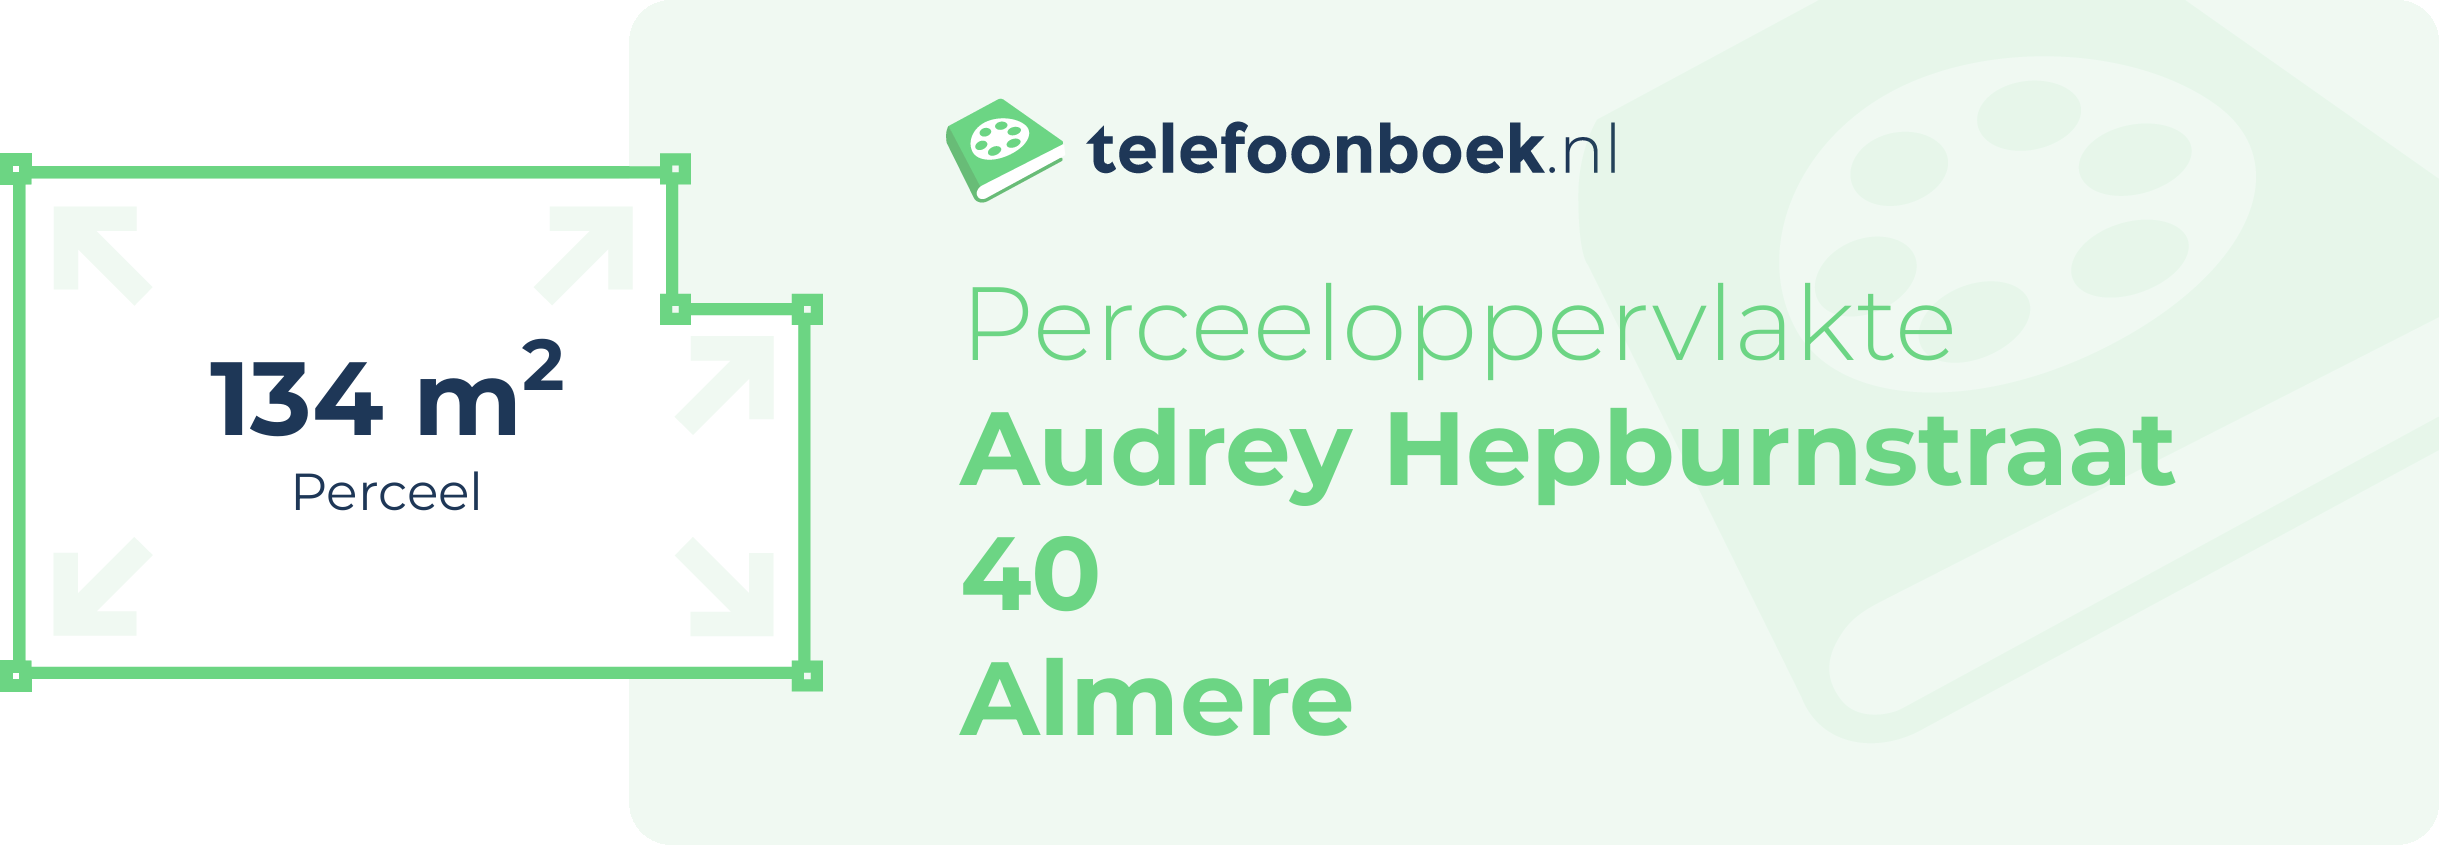 Perceeloppervlakte Audrey Hepburnstraat 40 Almere